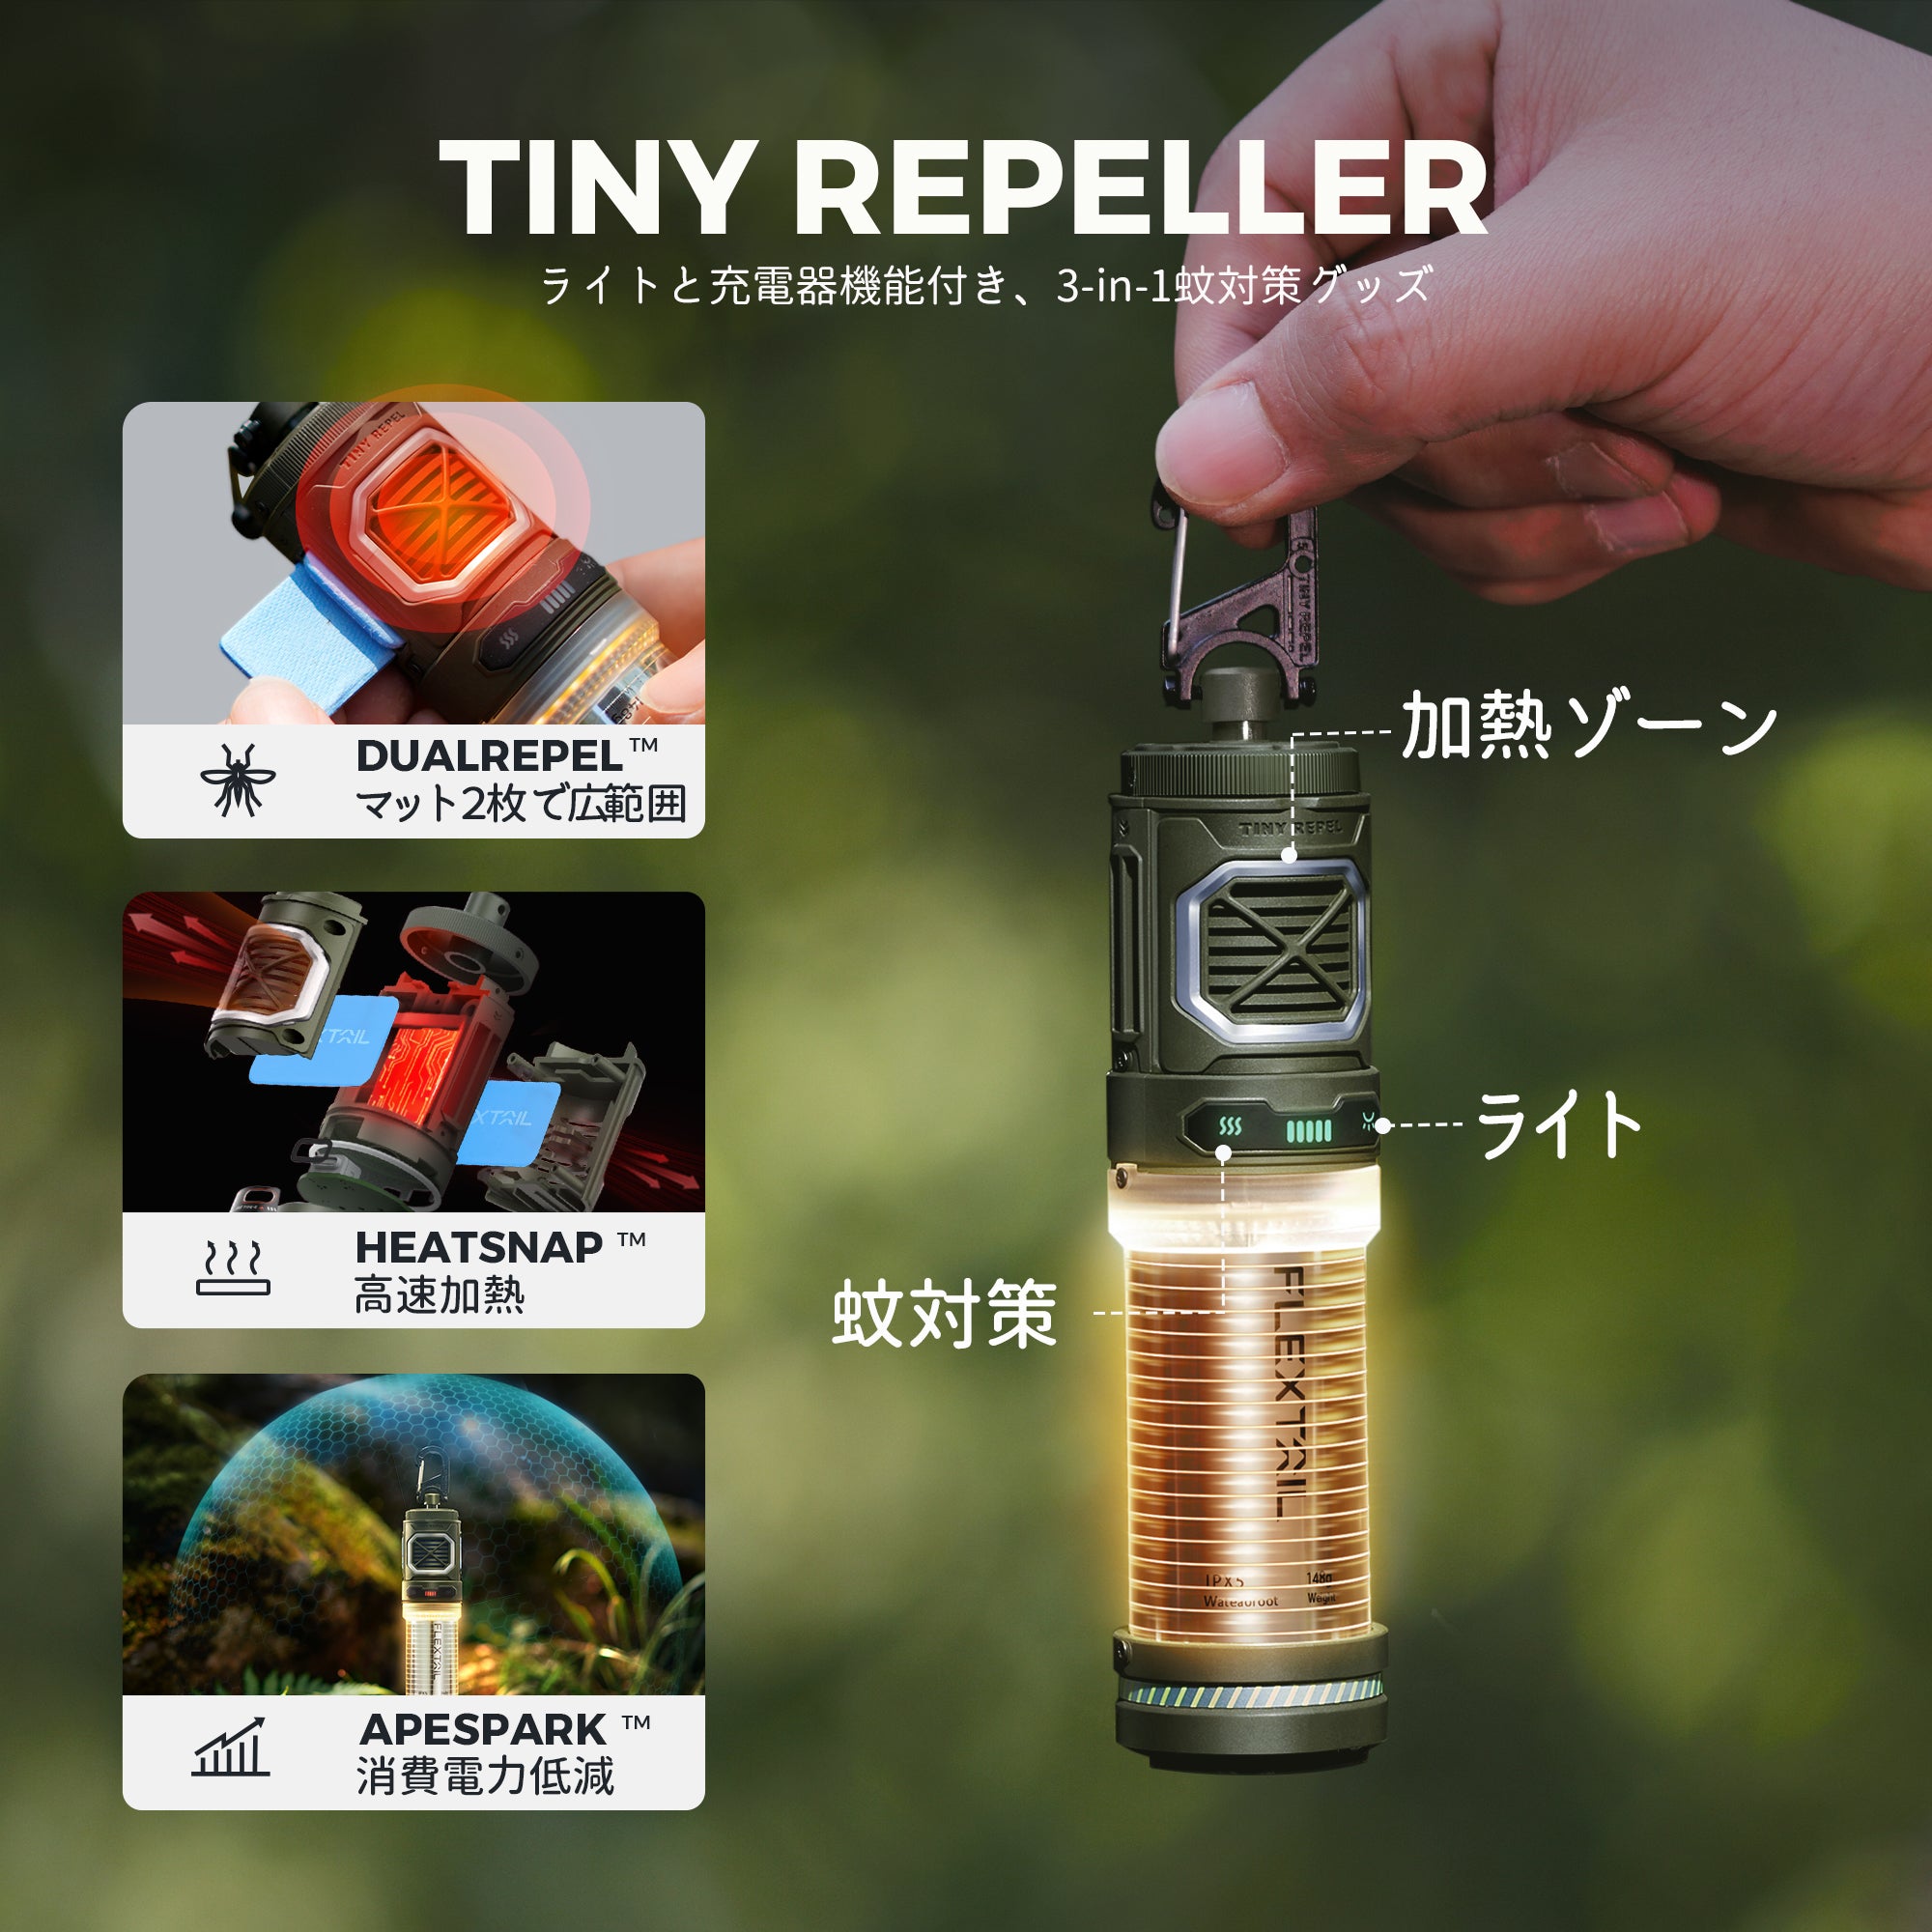 TINY REPELLER‐ライトと充電器機能付き、3-in-1蚊対策グッズ – FLEXTAIL-JP